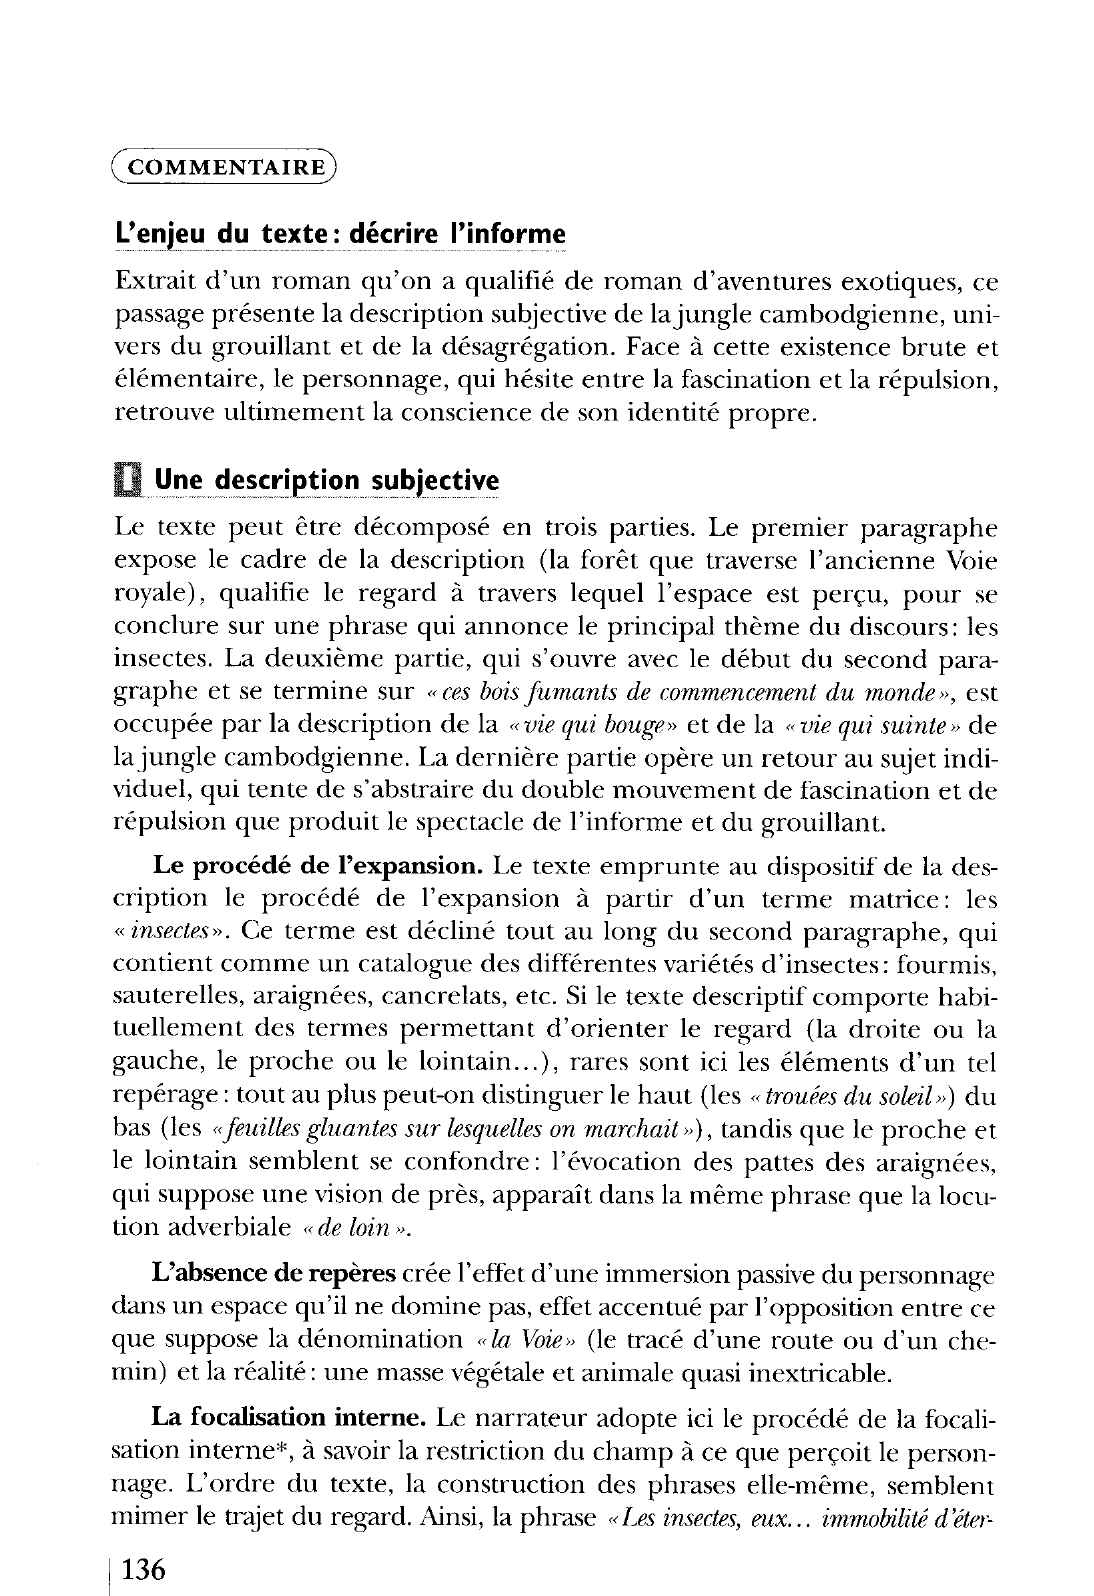 Prévisualisation du document La Voie royale, IIe partie, chap. I, Le Livre de Poche (Grasset), pp. 65-67.